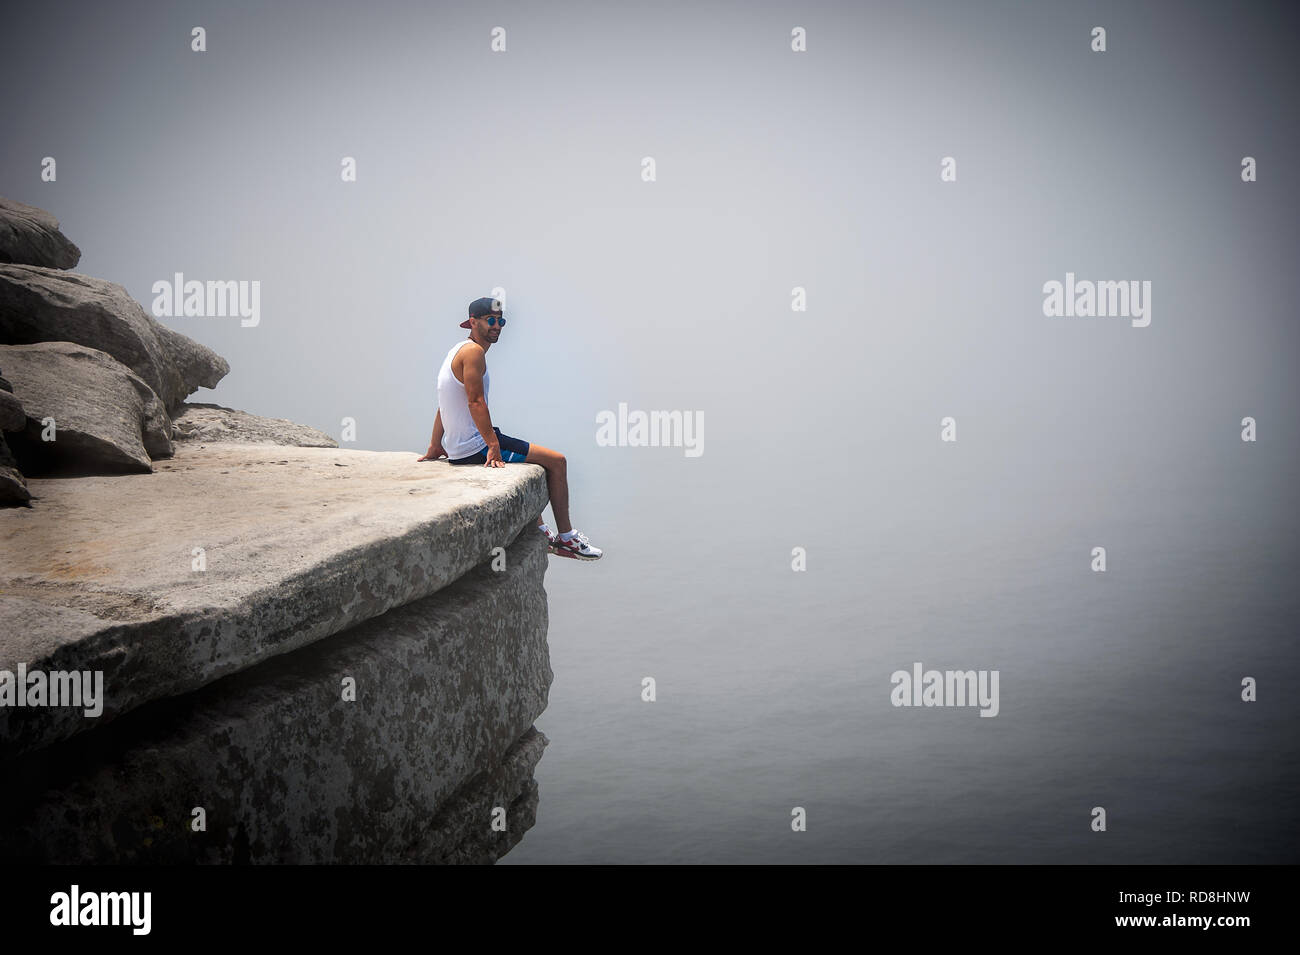 Sydney, Australia: sonriente joven sentada sobre el borde de un acantilado con caídas al océano abajo. Escena surrealista como la niebla envuelve el paisaje de mar Foto de stock